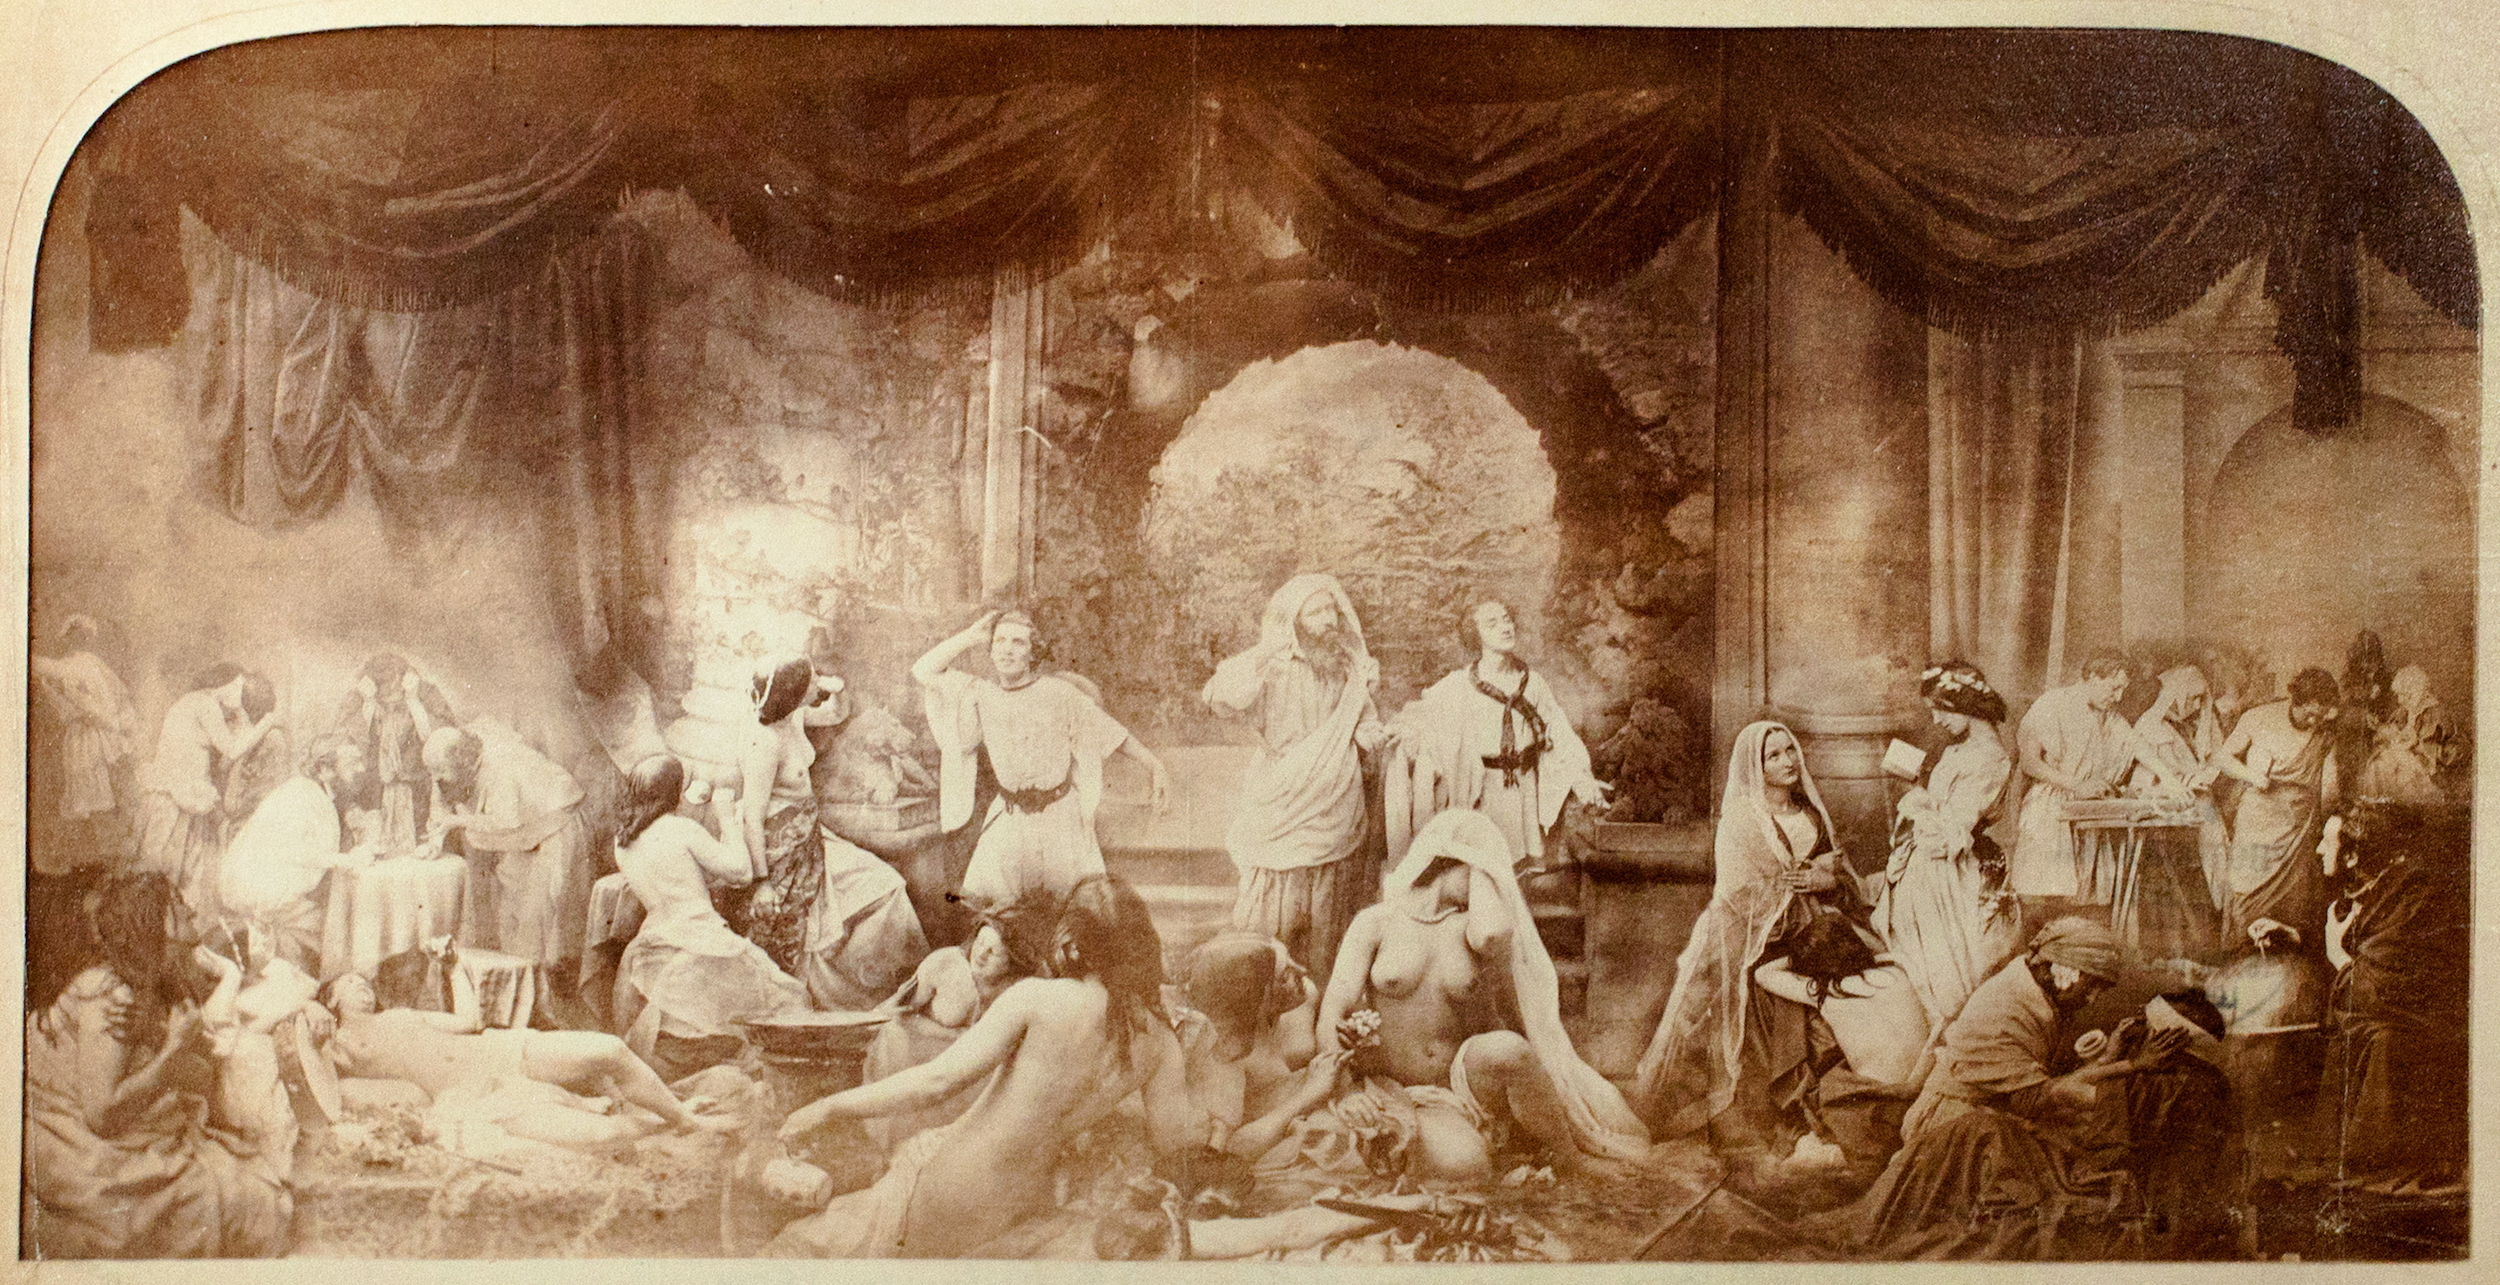 Imagens Compostas 1850-1935 – Os Primórdios da Fotomontagem by Oscar Gustave Rejlander - 1858 